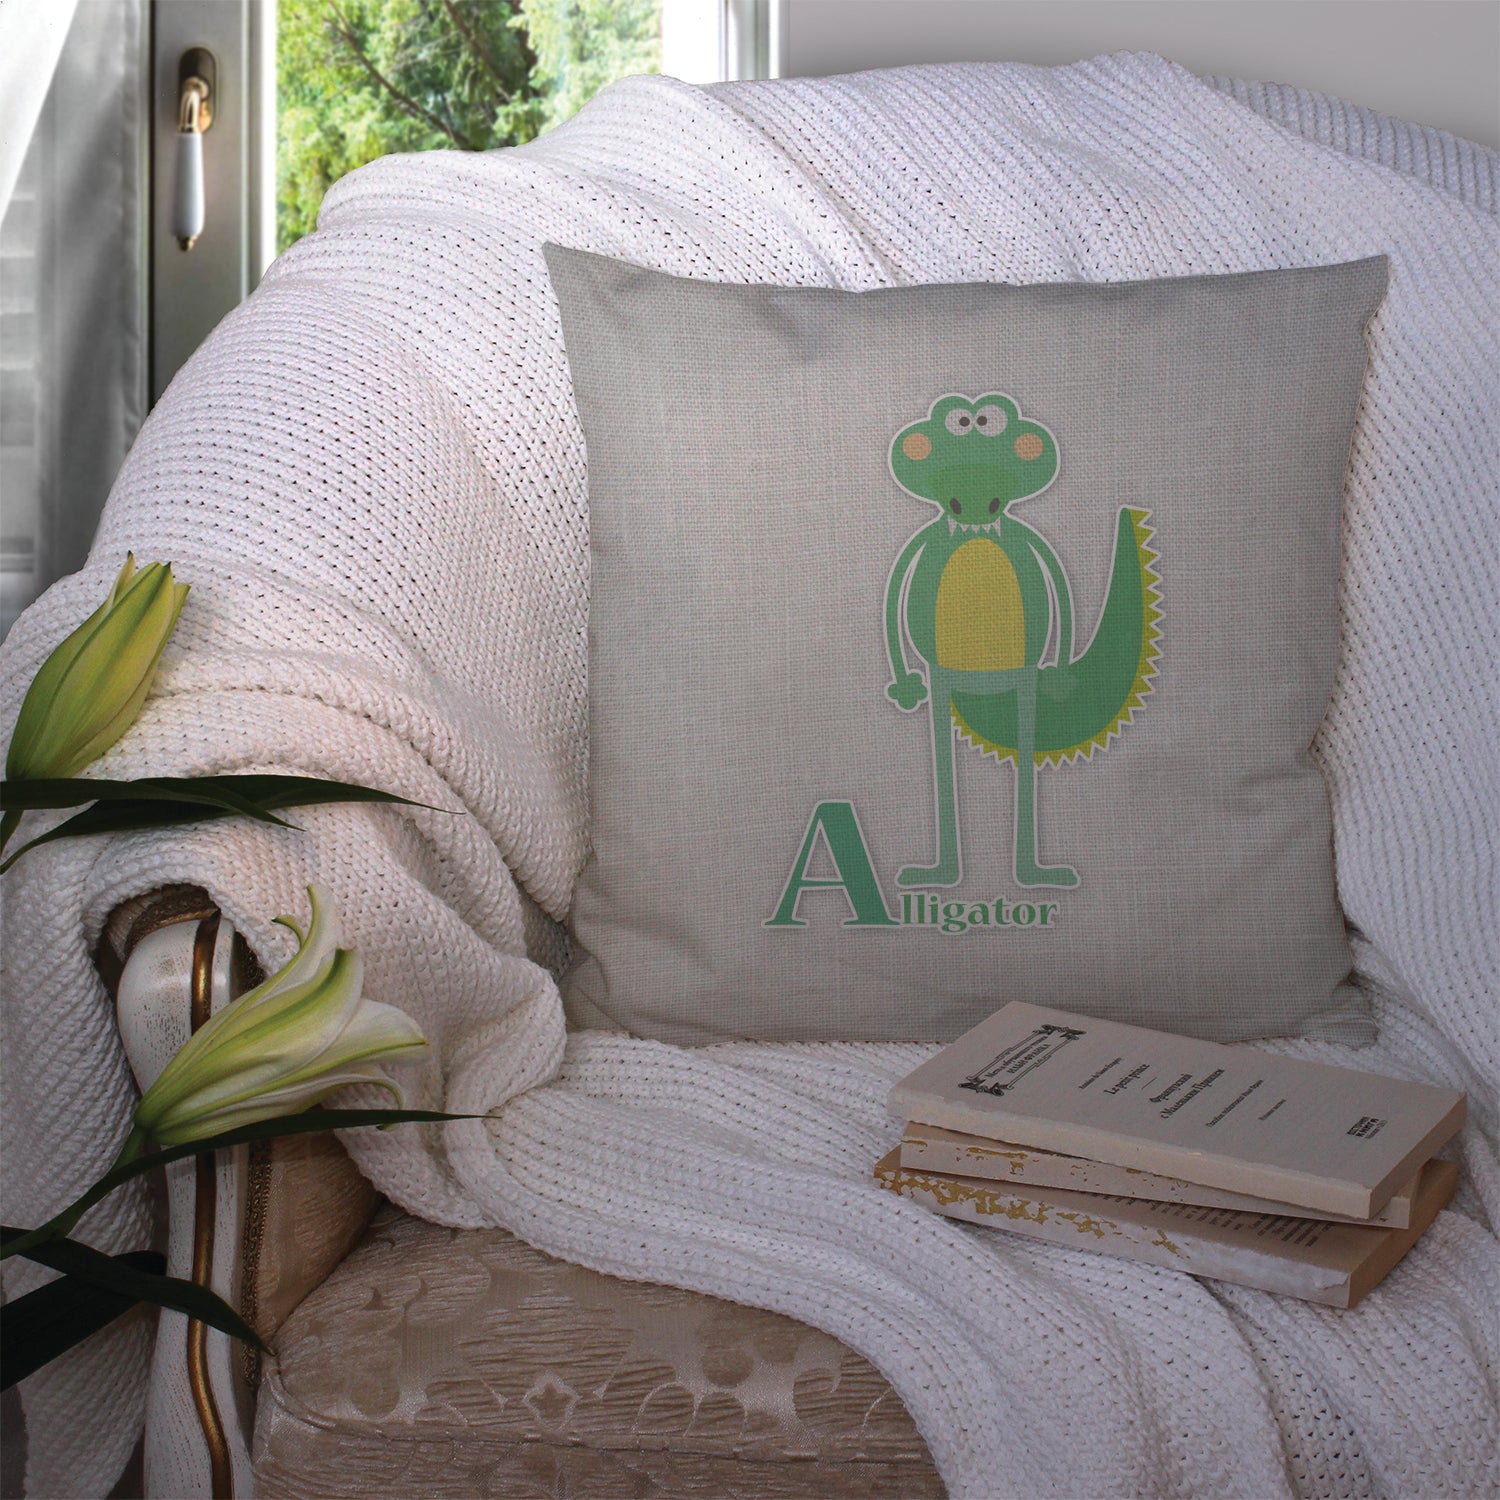 Alphabet A for Alligator Fabric Decorative Pillow BB5726PW1414 - the-store.com